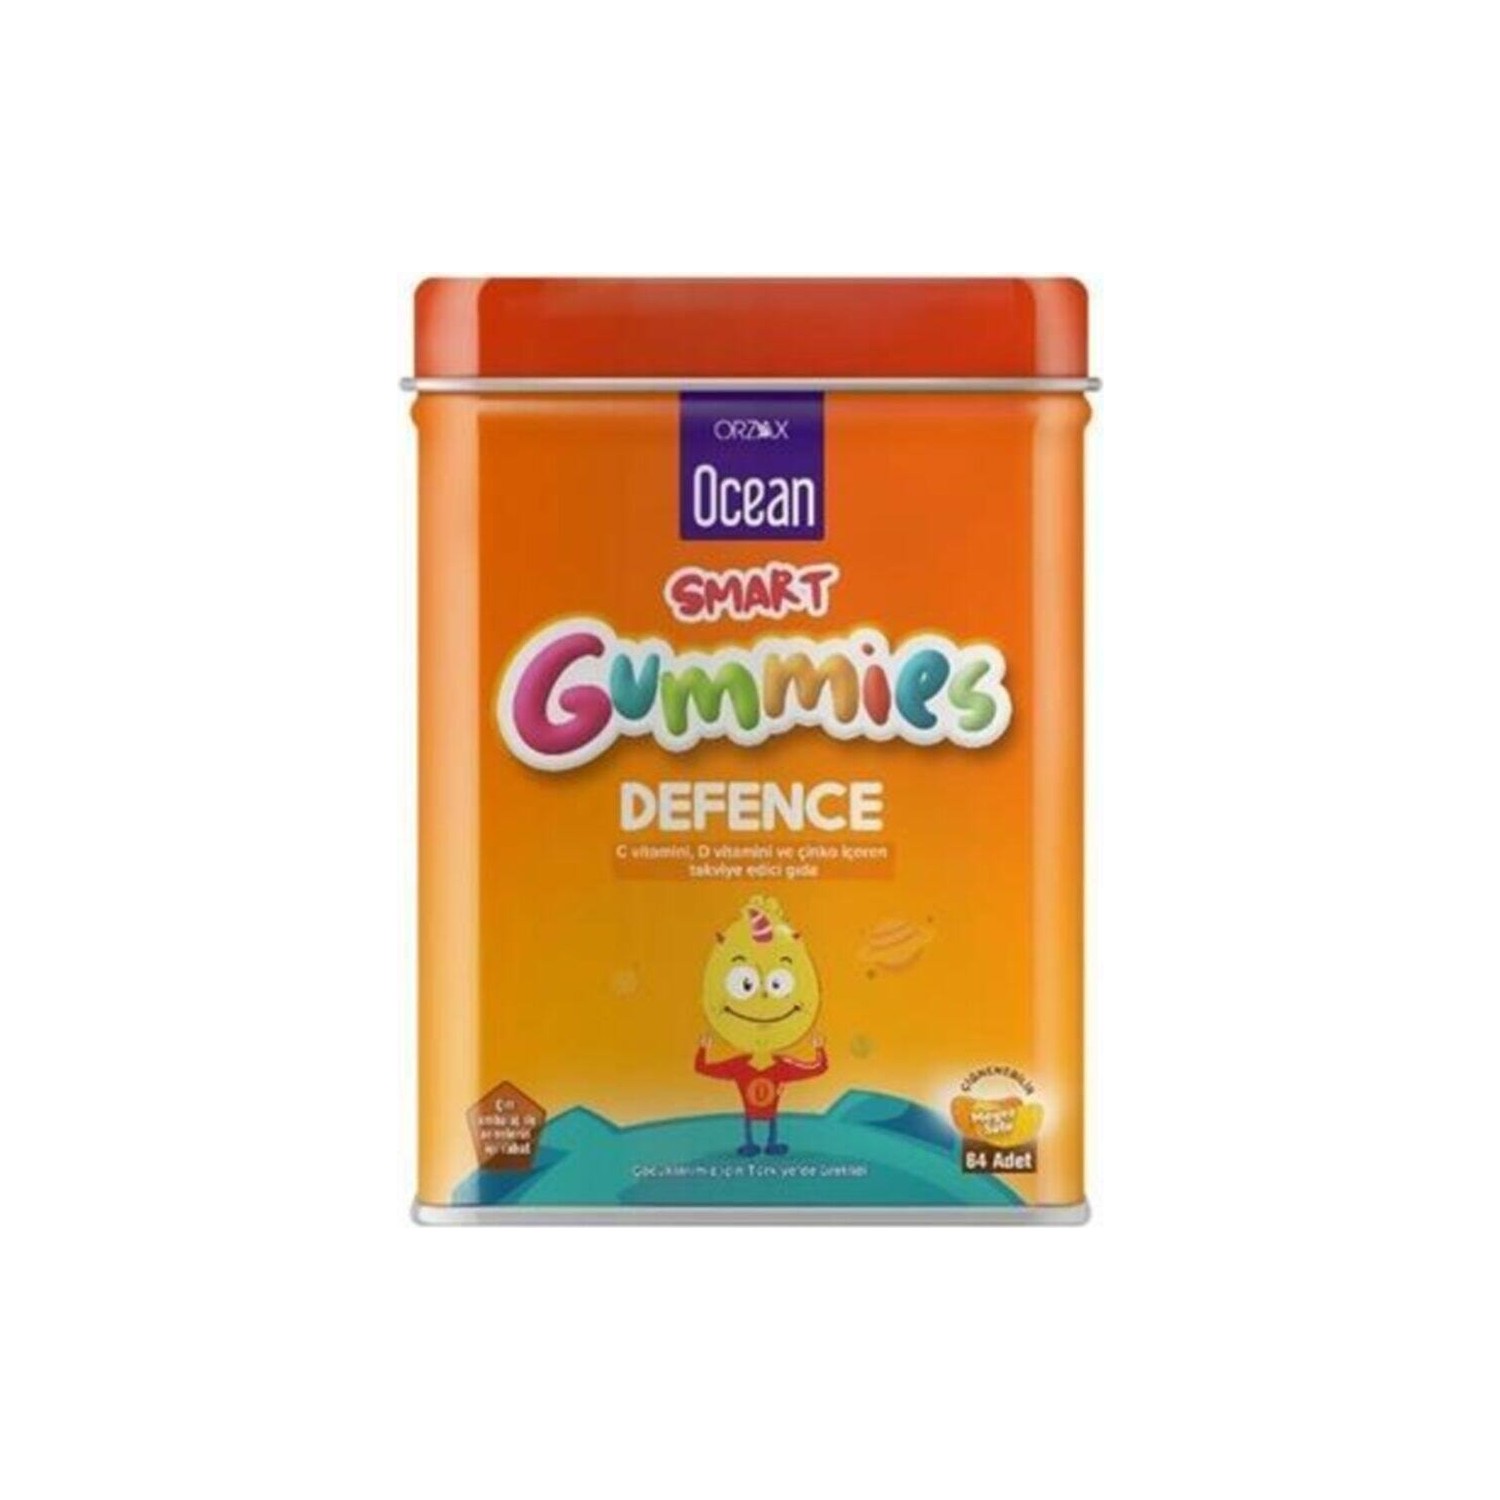 Поливитамины Ocean Smart Gummies Defense, 3 упаковки по 64 штуки мультивитаминный гель orzax ocean smart gumies с фруктовым соком 64 таблетки